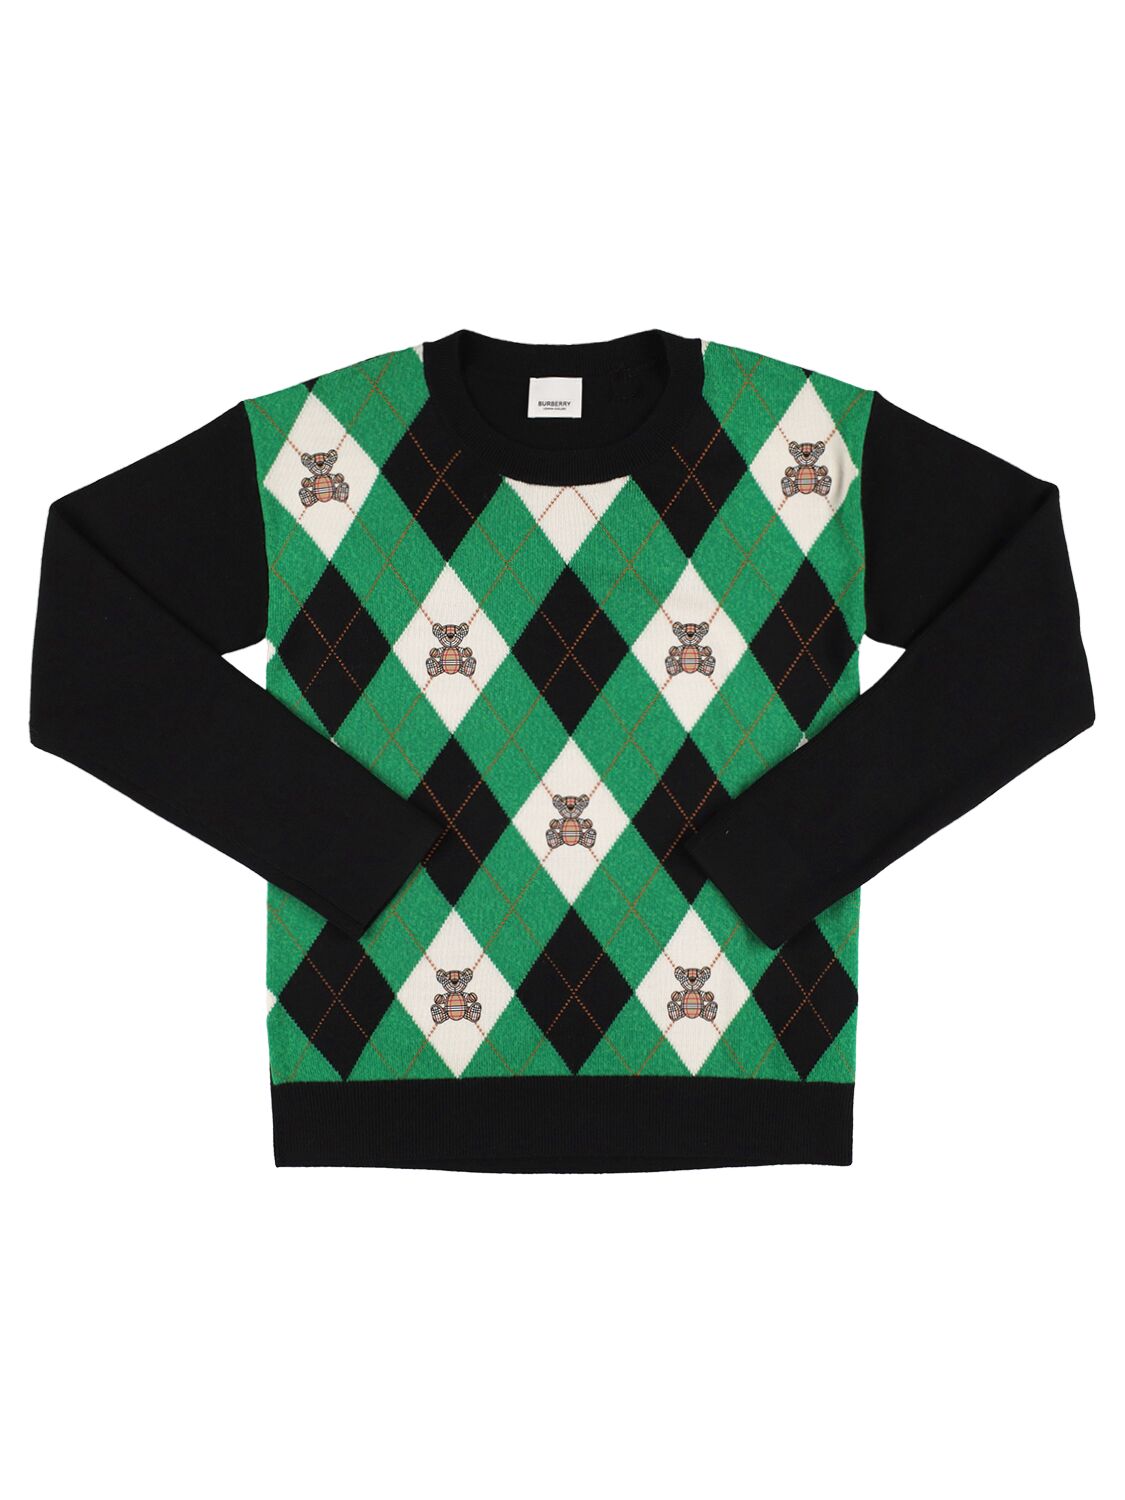 Burberry Kids' Rhombus Print Wool Knit Jumper In Green,black